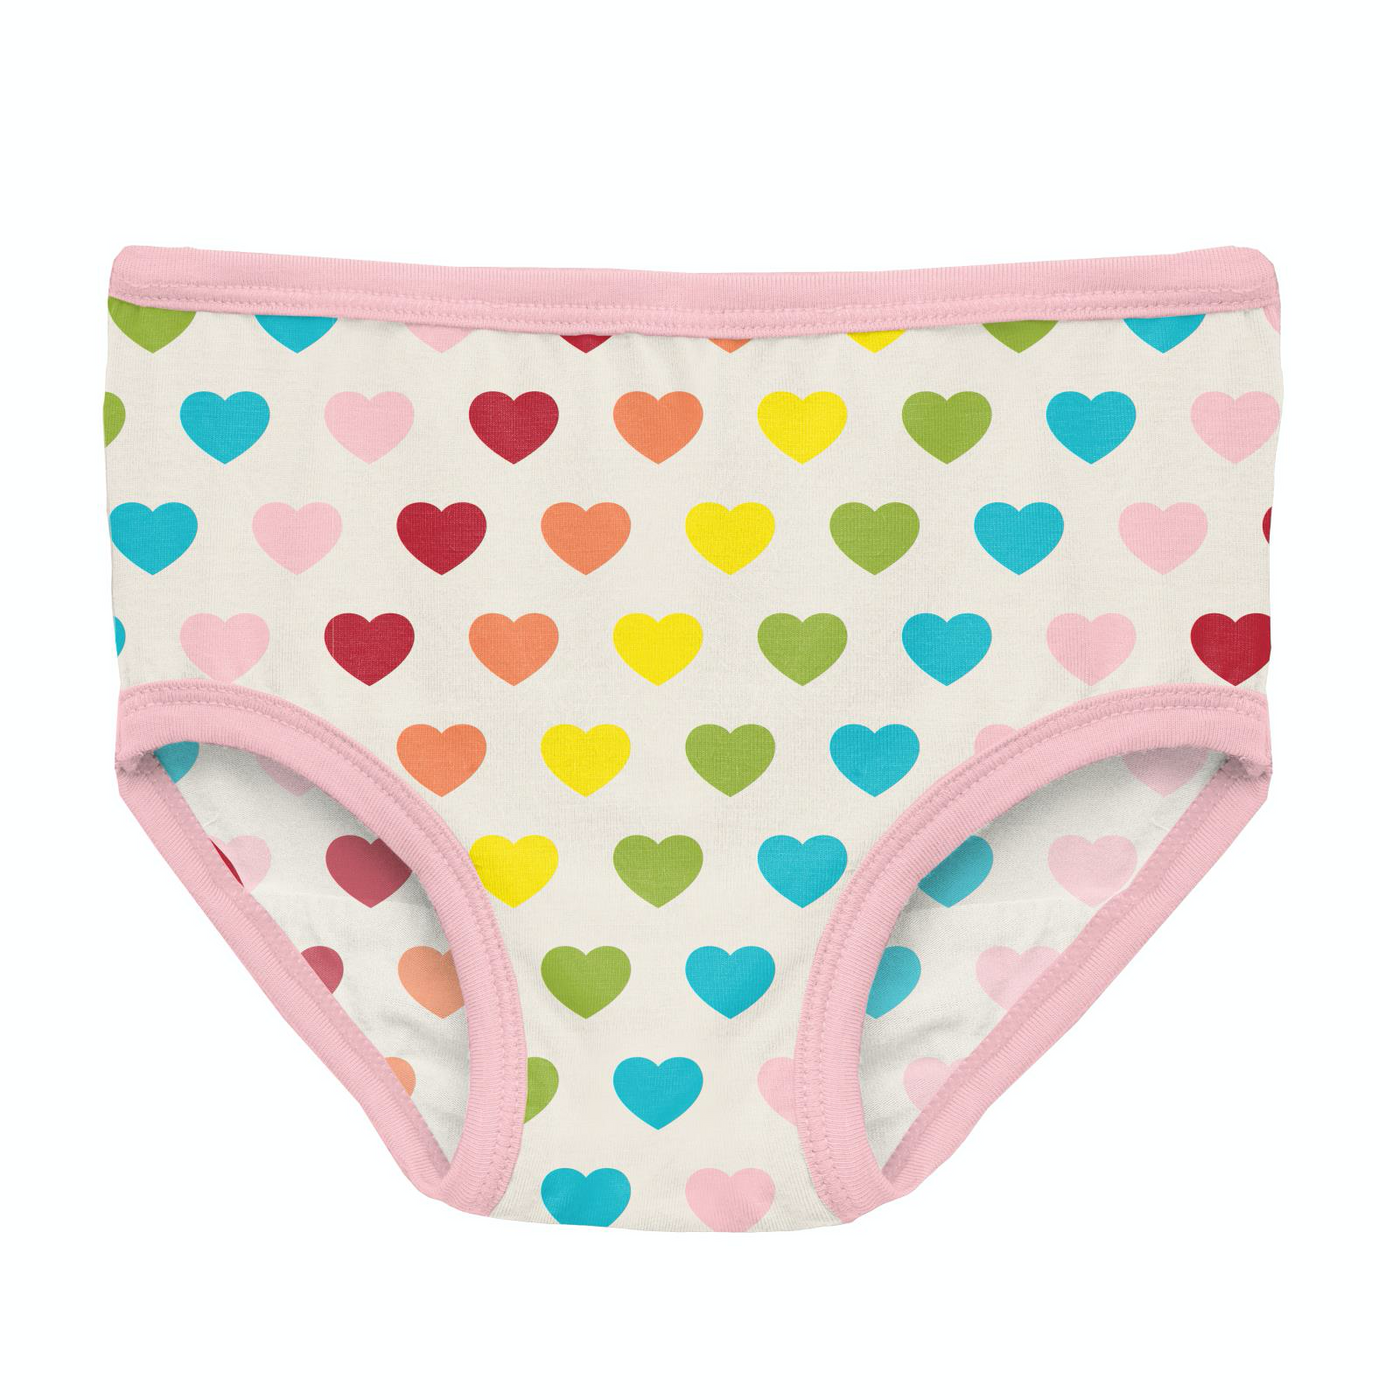 Kickee Pants Girl's Underwear: Rainbow Hearts